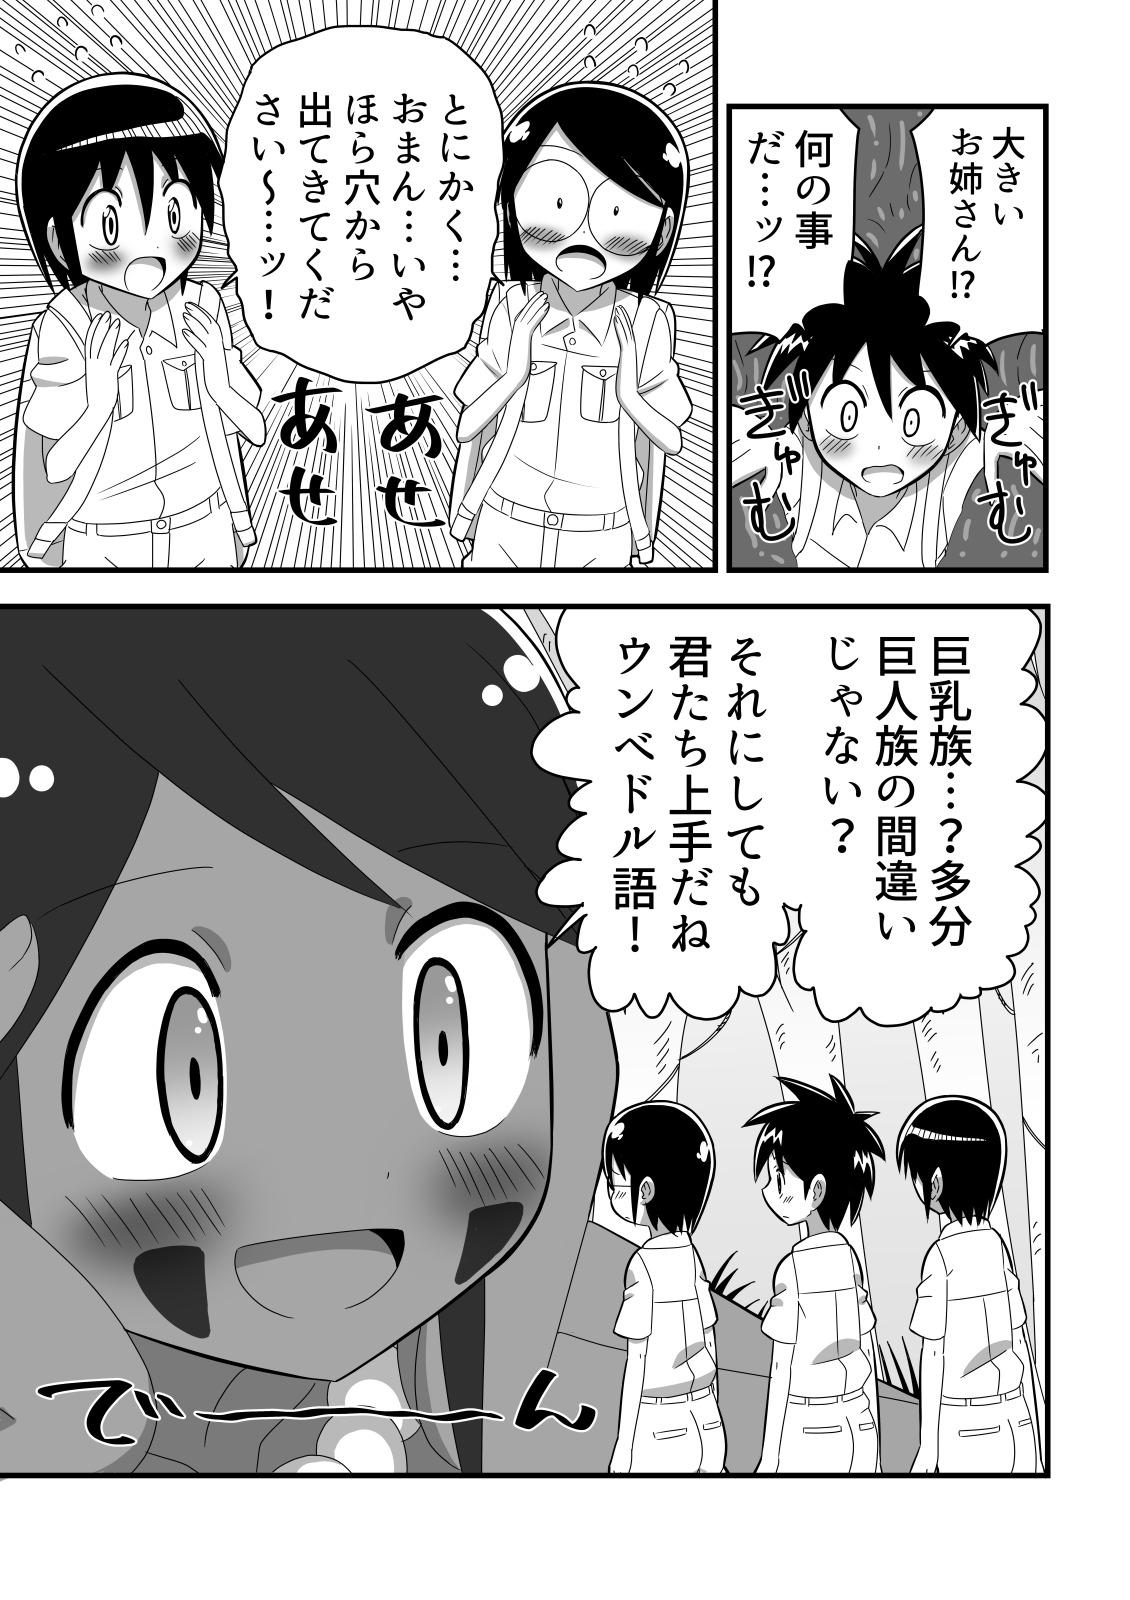 Foreplay Jingai OneShota Manga Tsumeawase Shuu Vol. 1 - Original Petite Teenager - Page 9